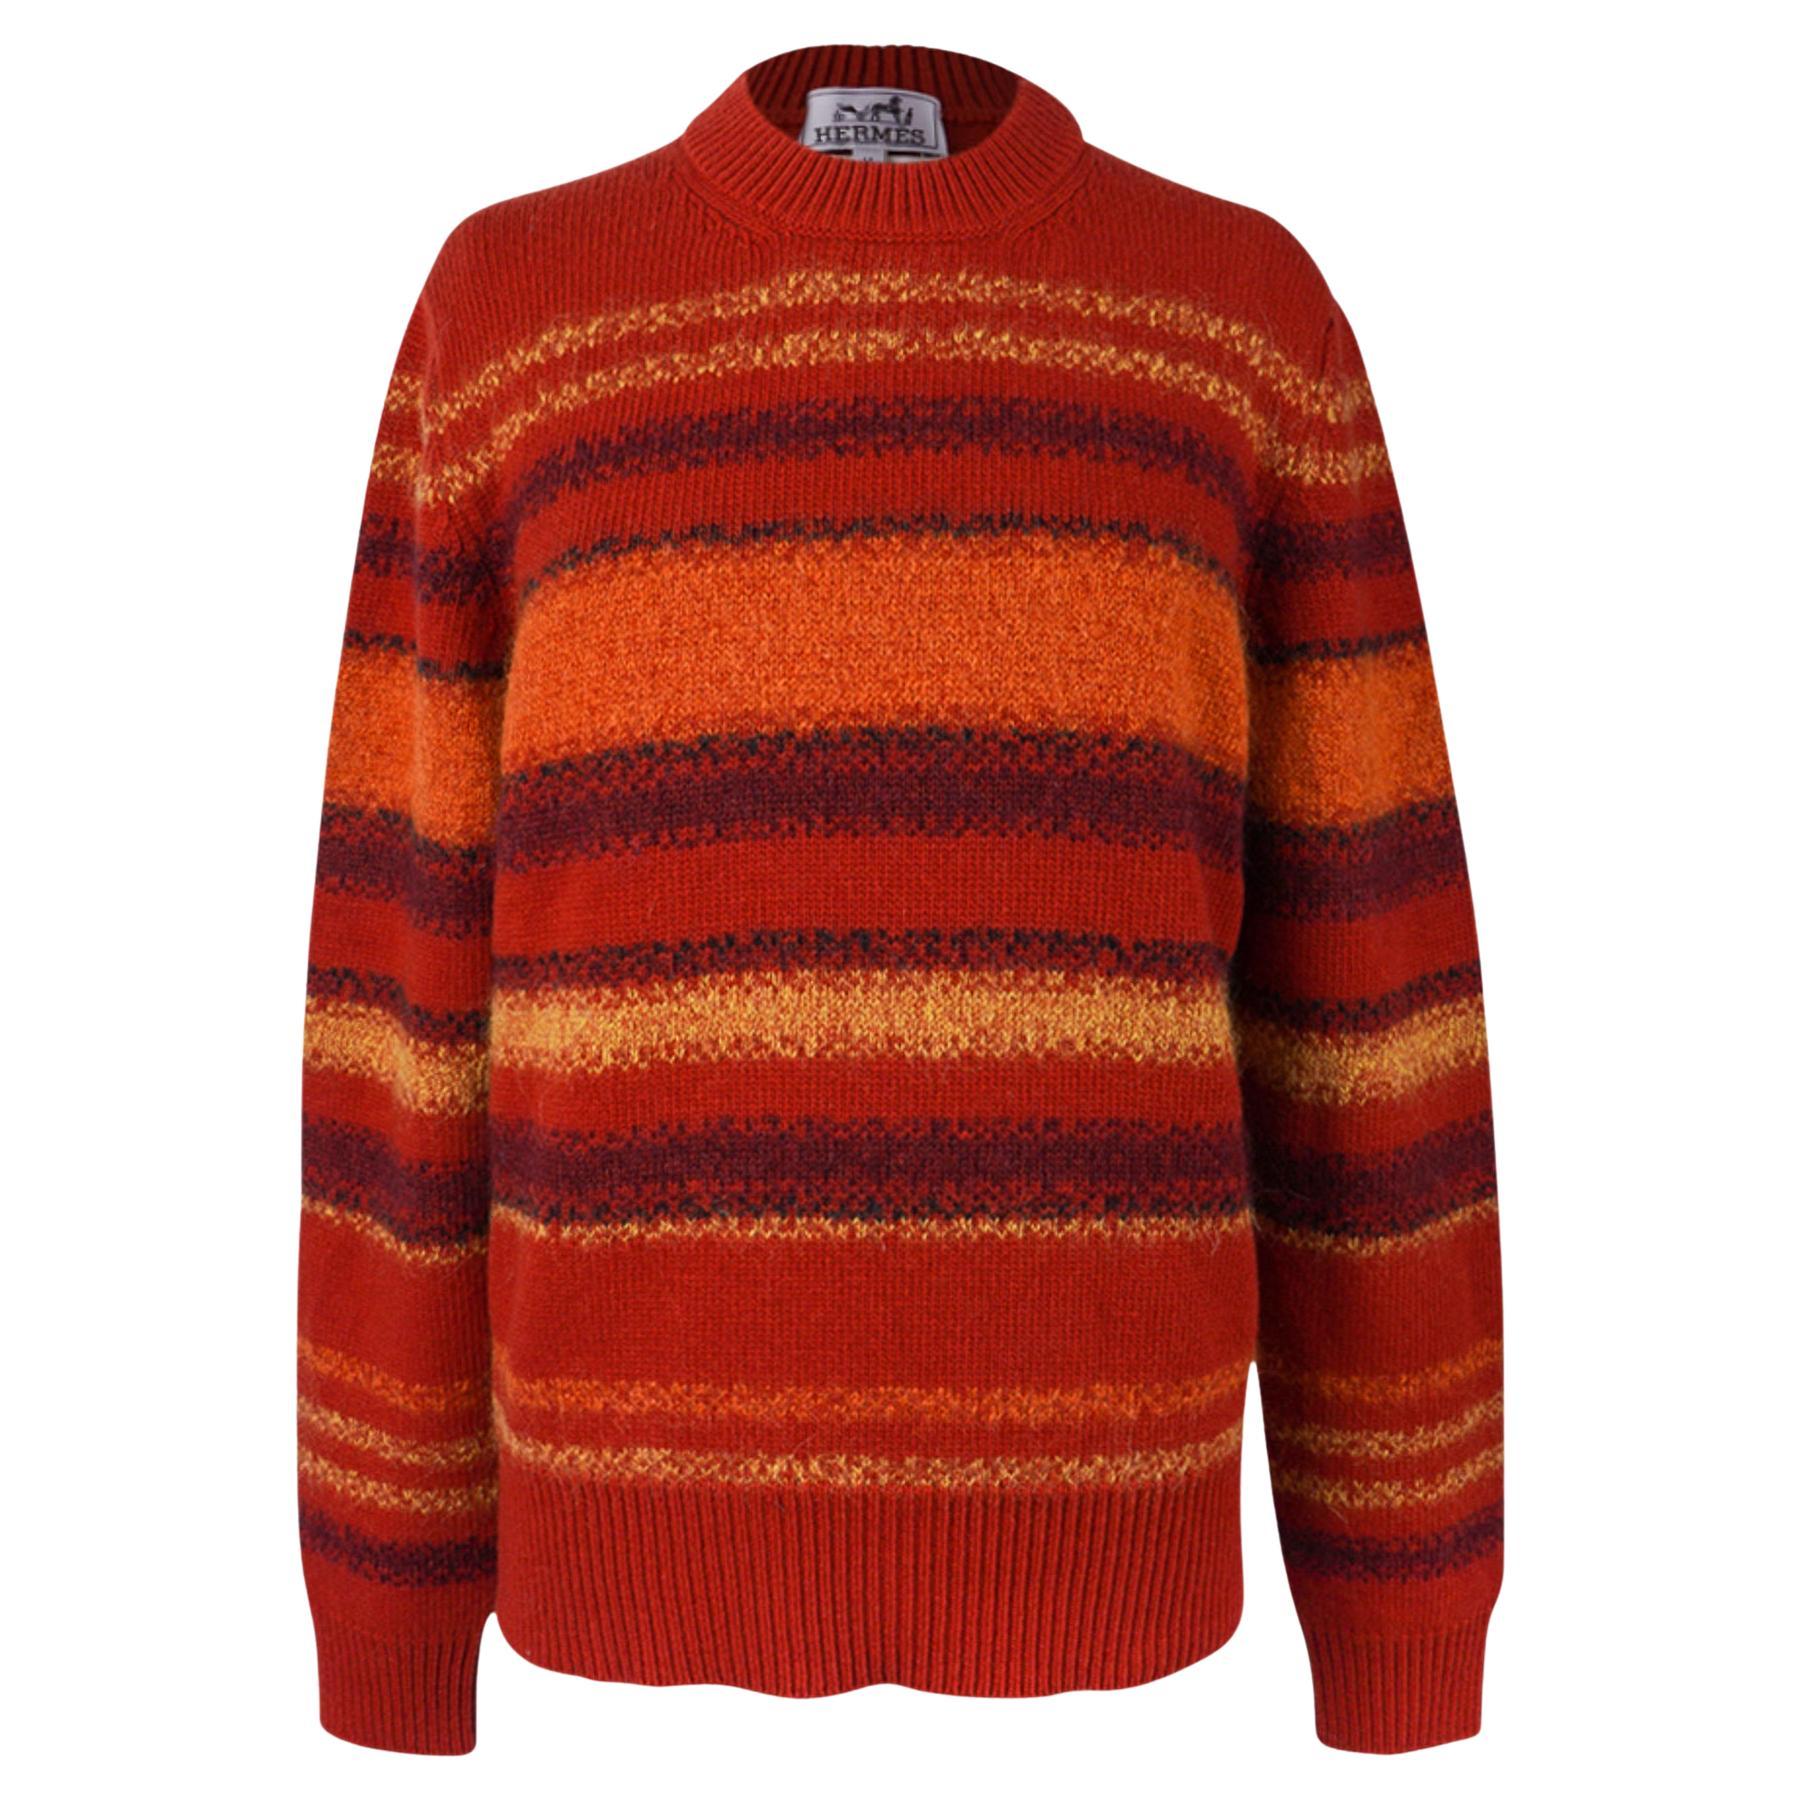 Hermes Sweater - 68 For Sale on 1stDibs | hermes jumper, hermes 